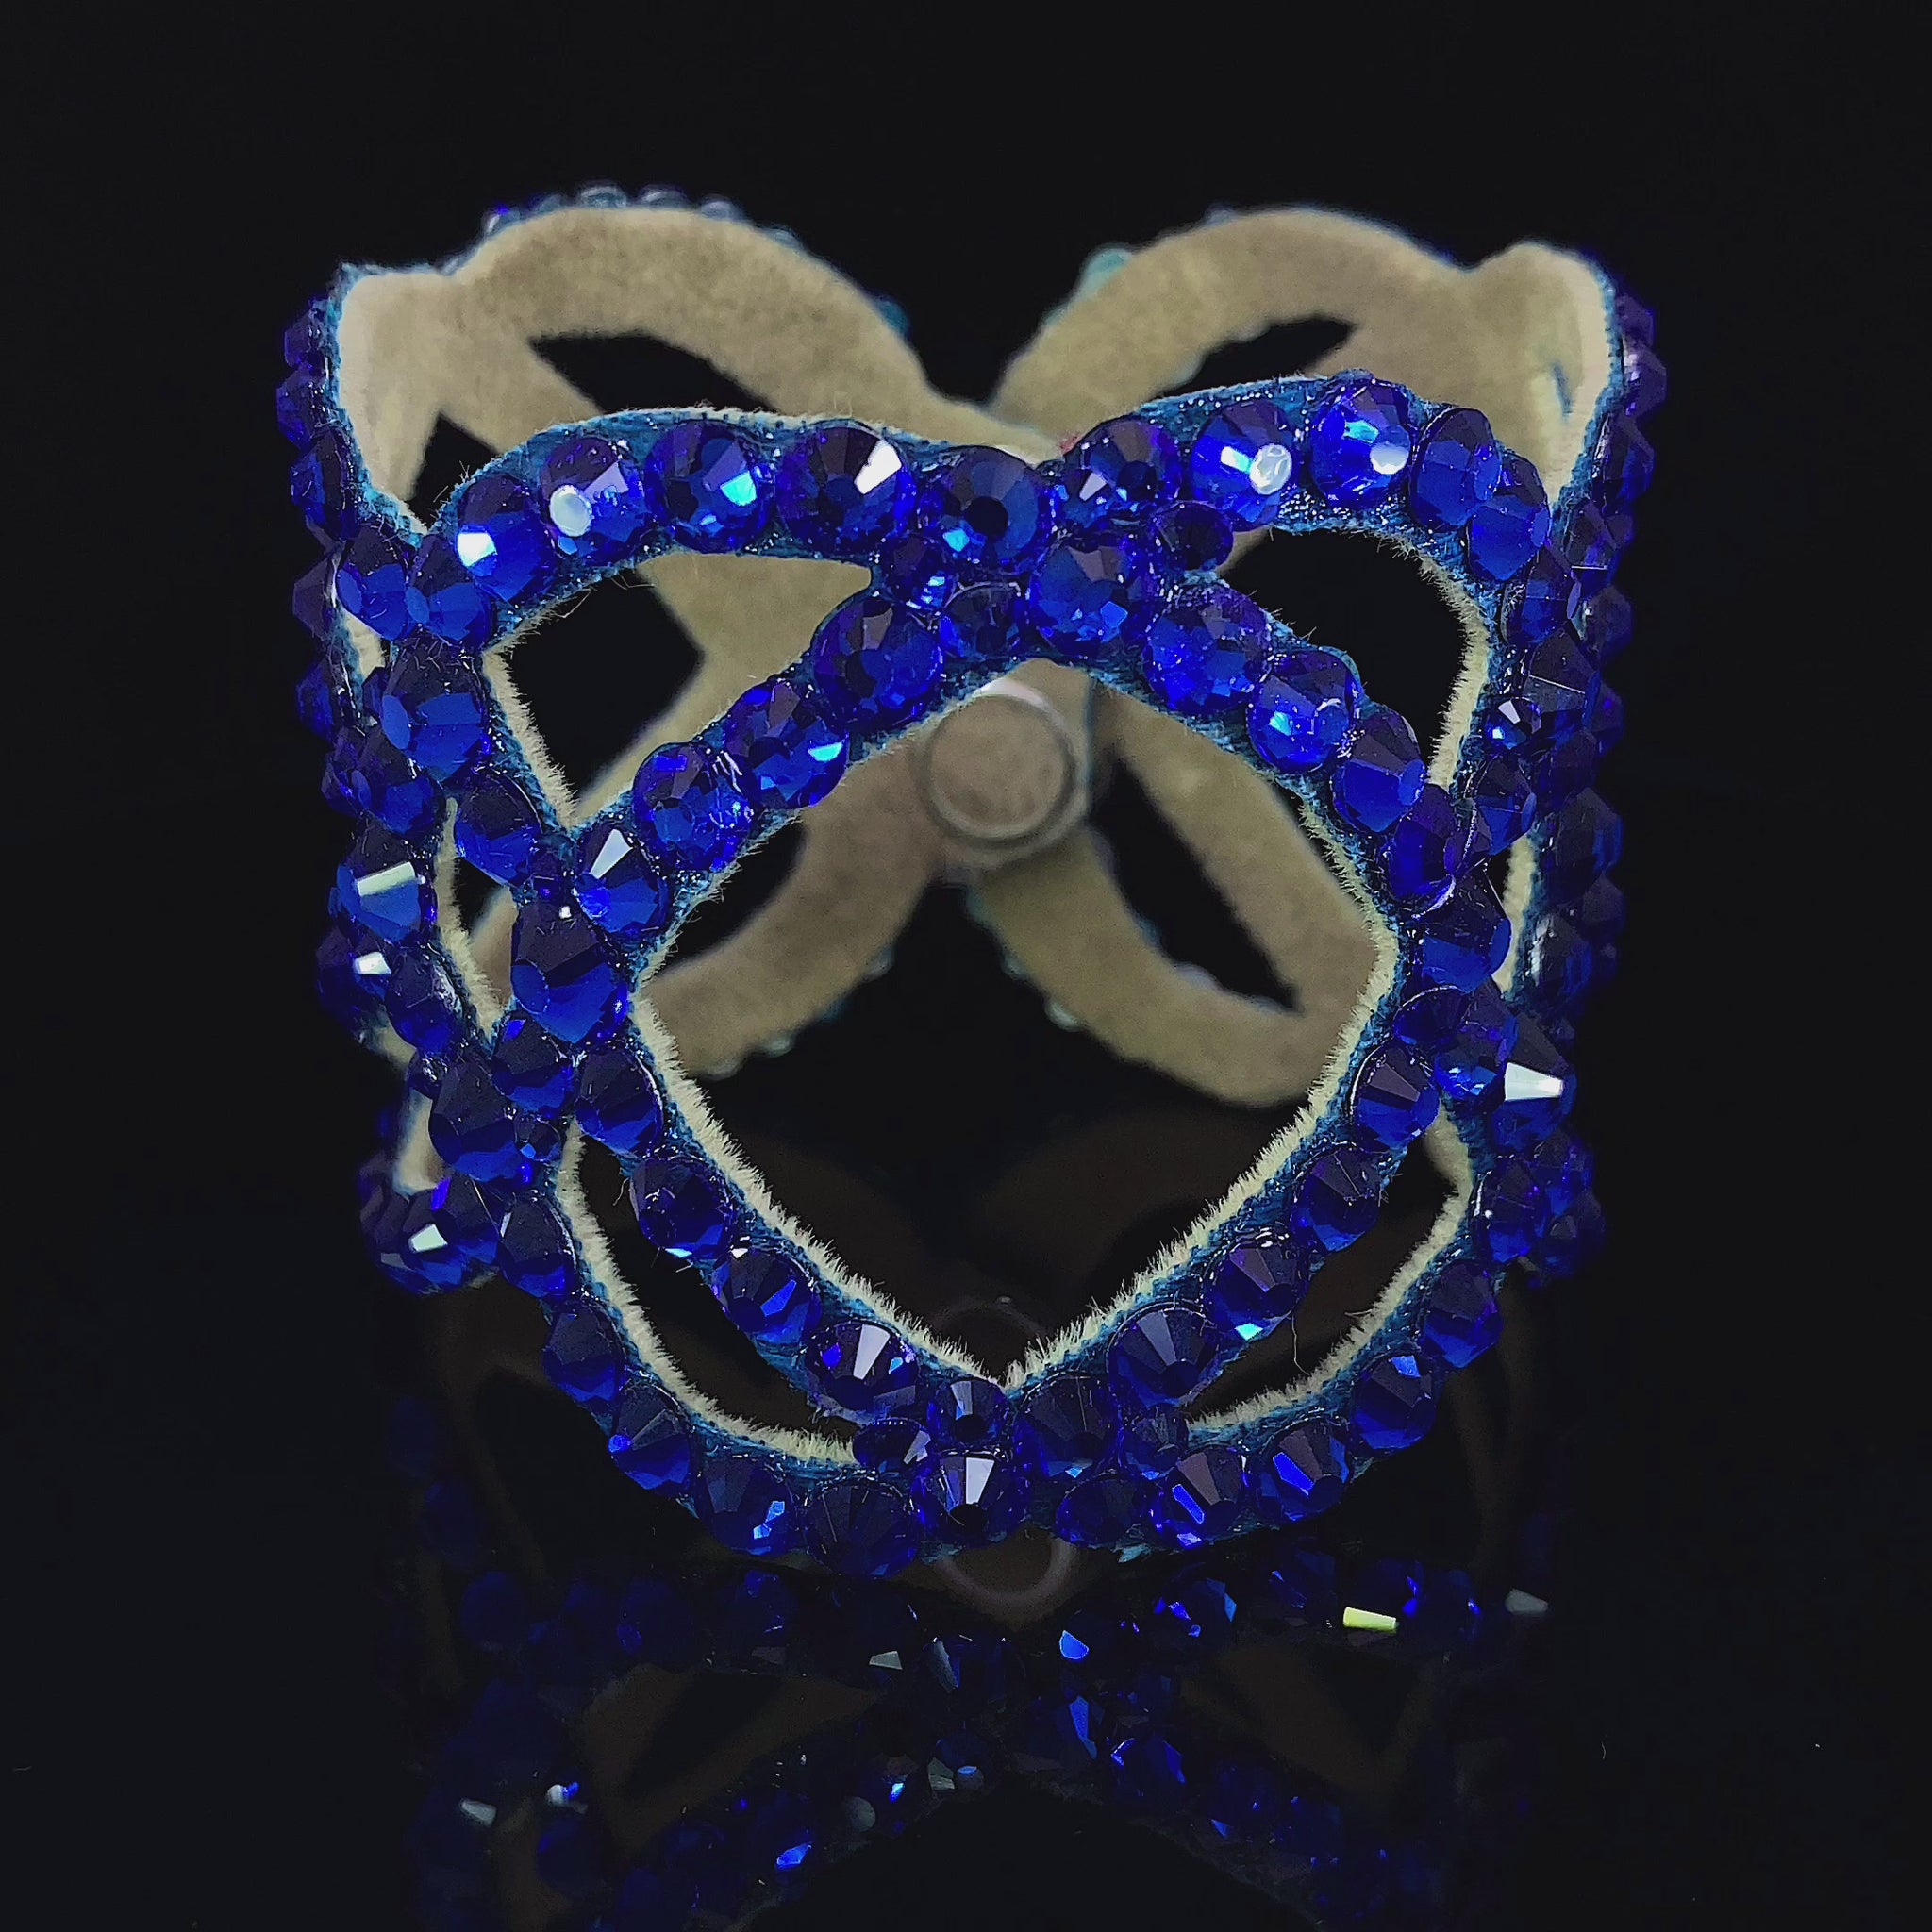 Video of deep blue rhinestones on bracelet for dancing